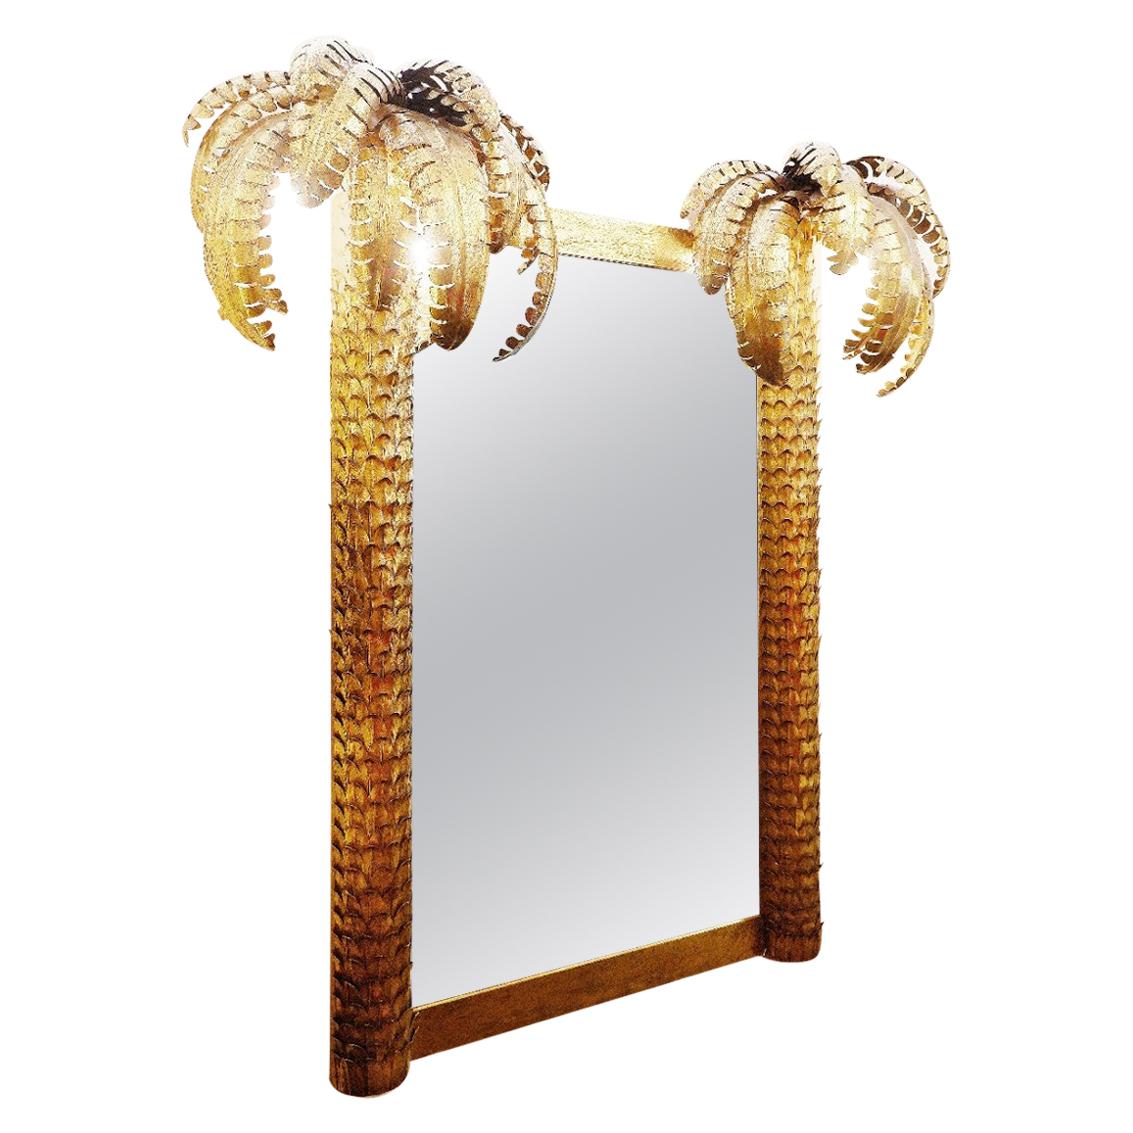 Palm Mirror in Style of "Maison Jansen"